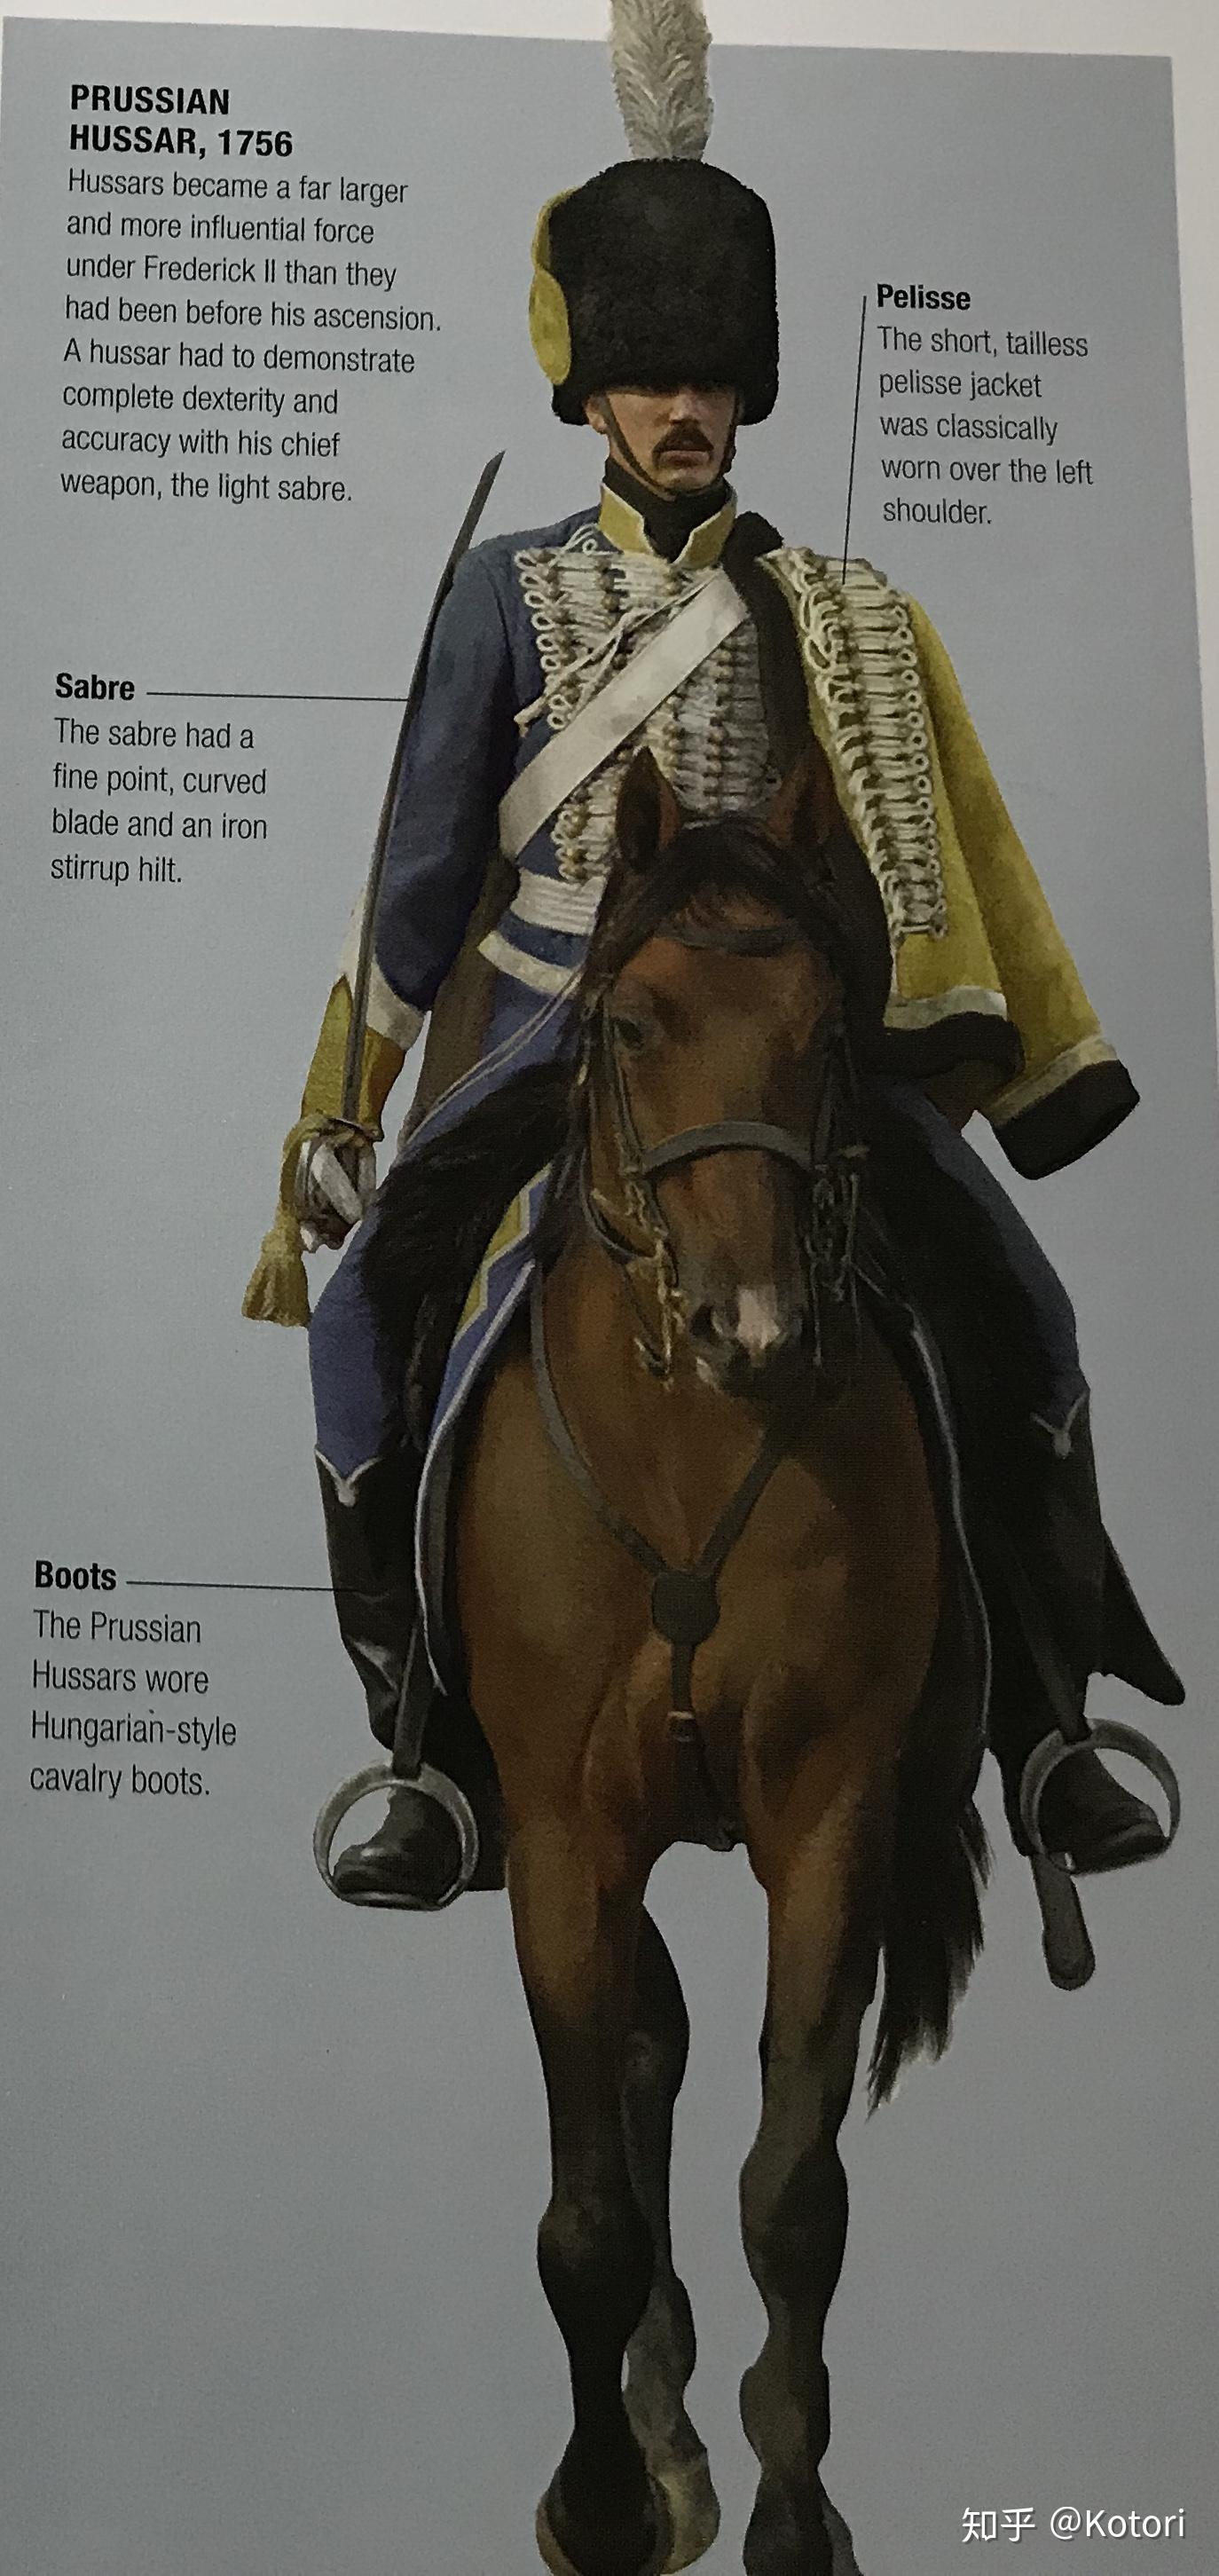 普鲁士轻骑兵靴子服装:大多数英国军队都穿着红色的服装(除了炮兵)火